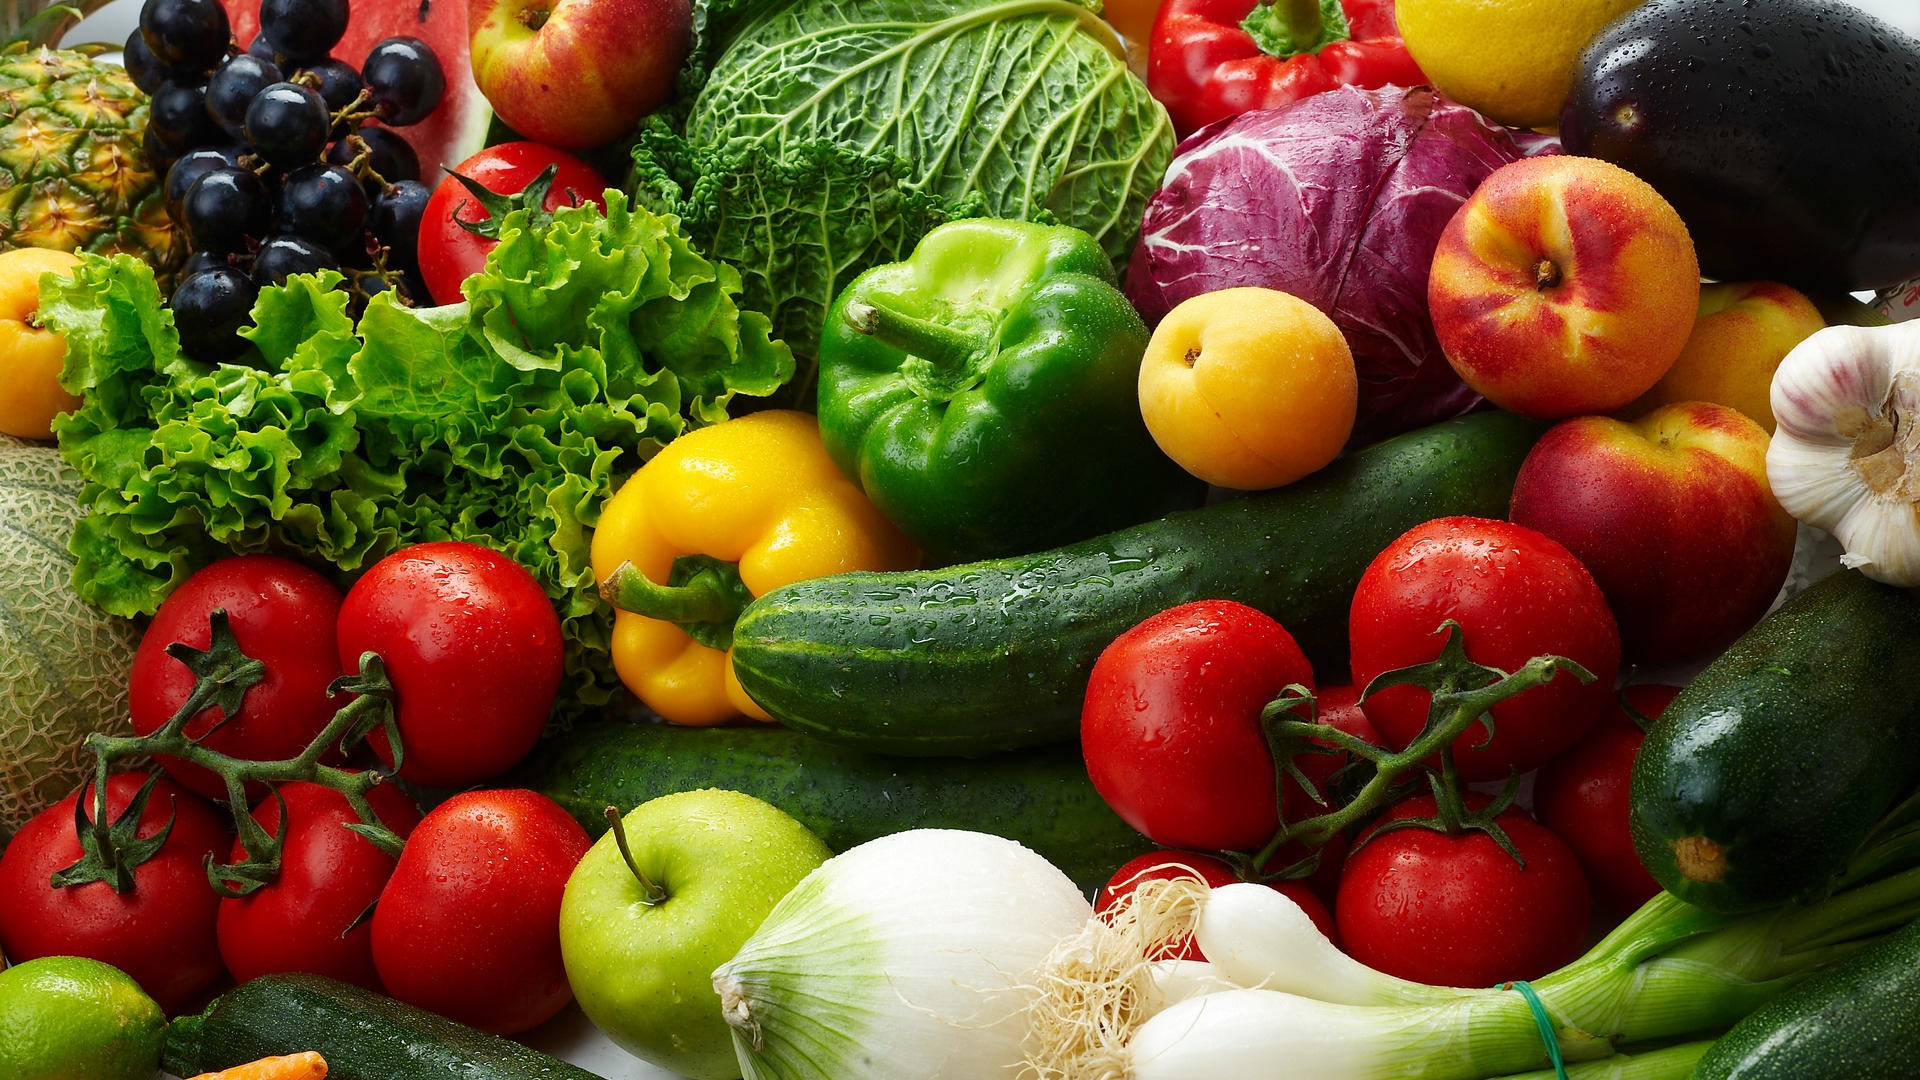 Брудна дюжина: учені назвали фрукти та овочі, де найбільше пестицидів